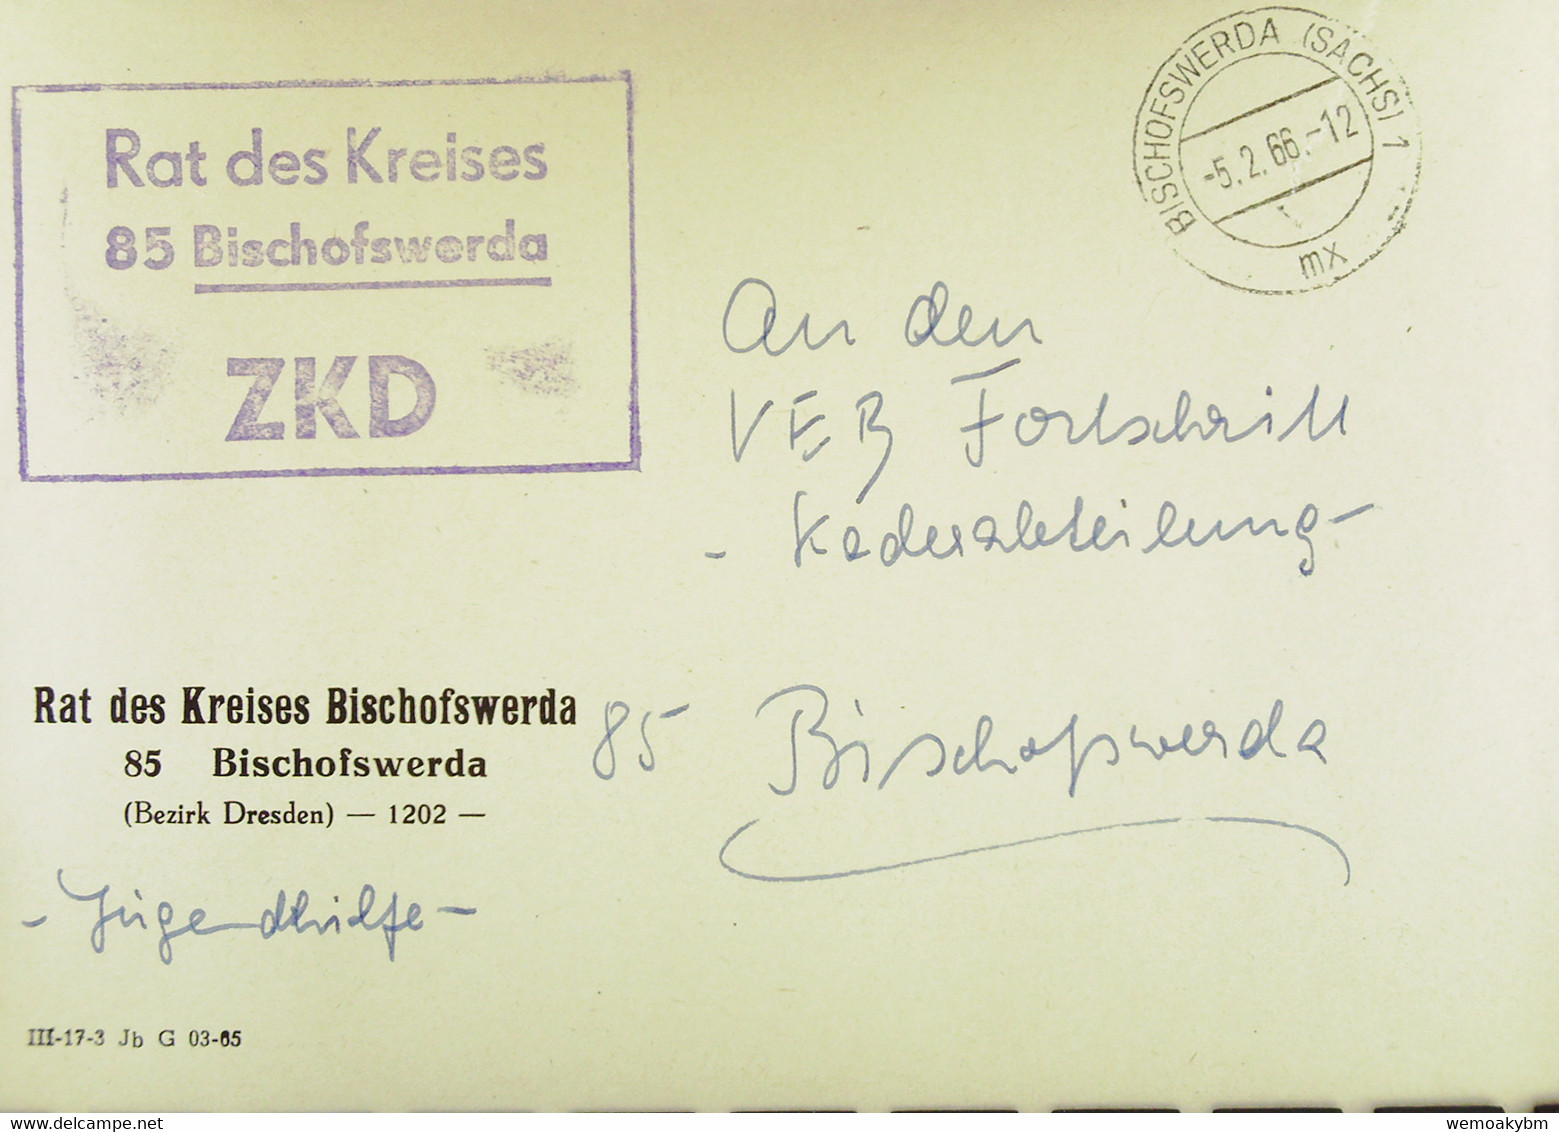 Orts-Brief Mit ZKD-Kastenstempel "Rat Des Kreises 85 Bischofswerda" Vom 5.2.66 An VEB Fortschritt - Central Mail Service